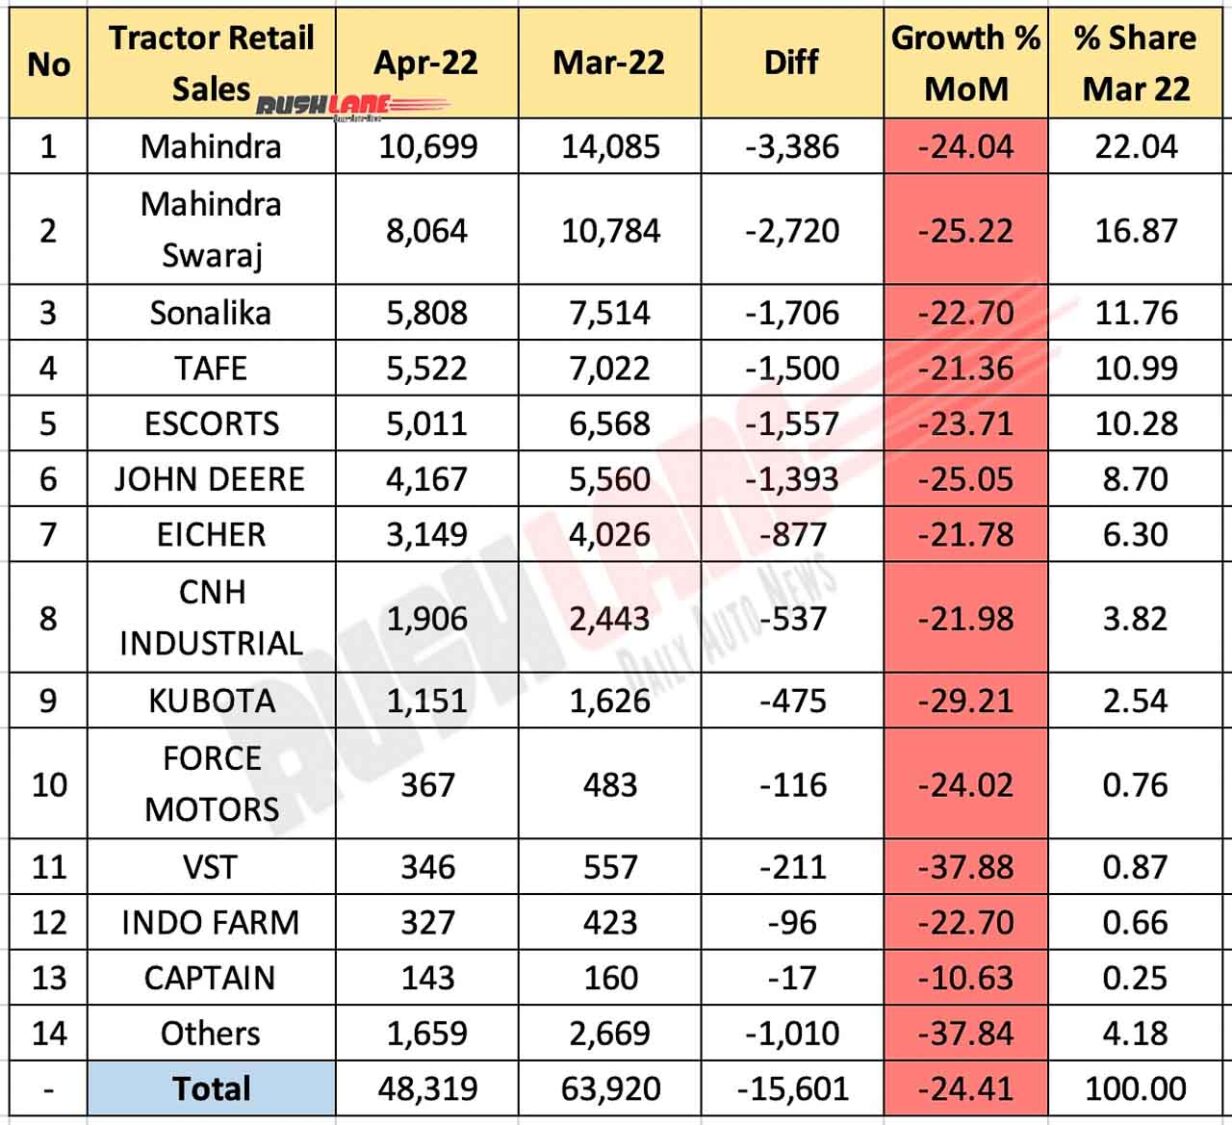 Tractor Sales April 2022 vs Mar 2022 (MoM)